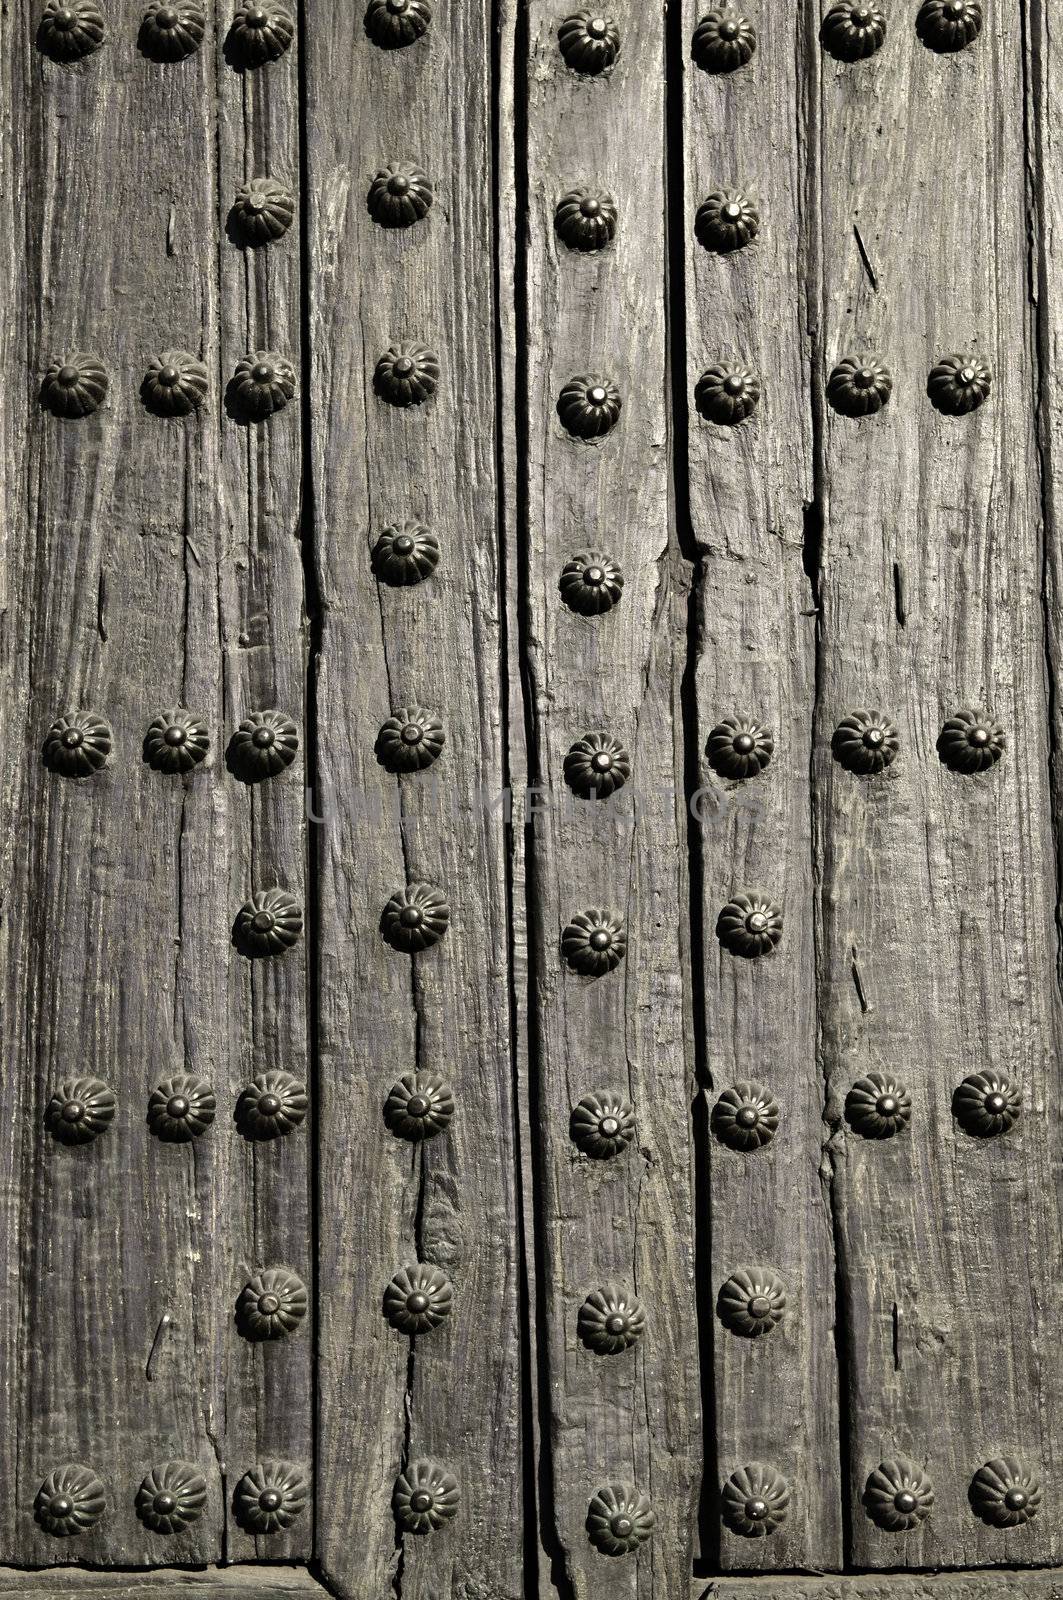 Door detail by elenathewise